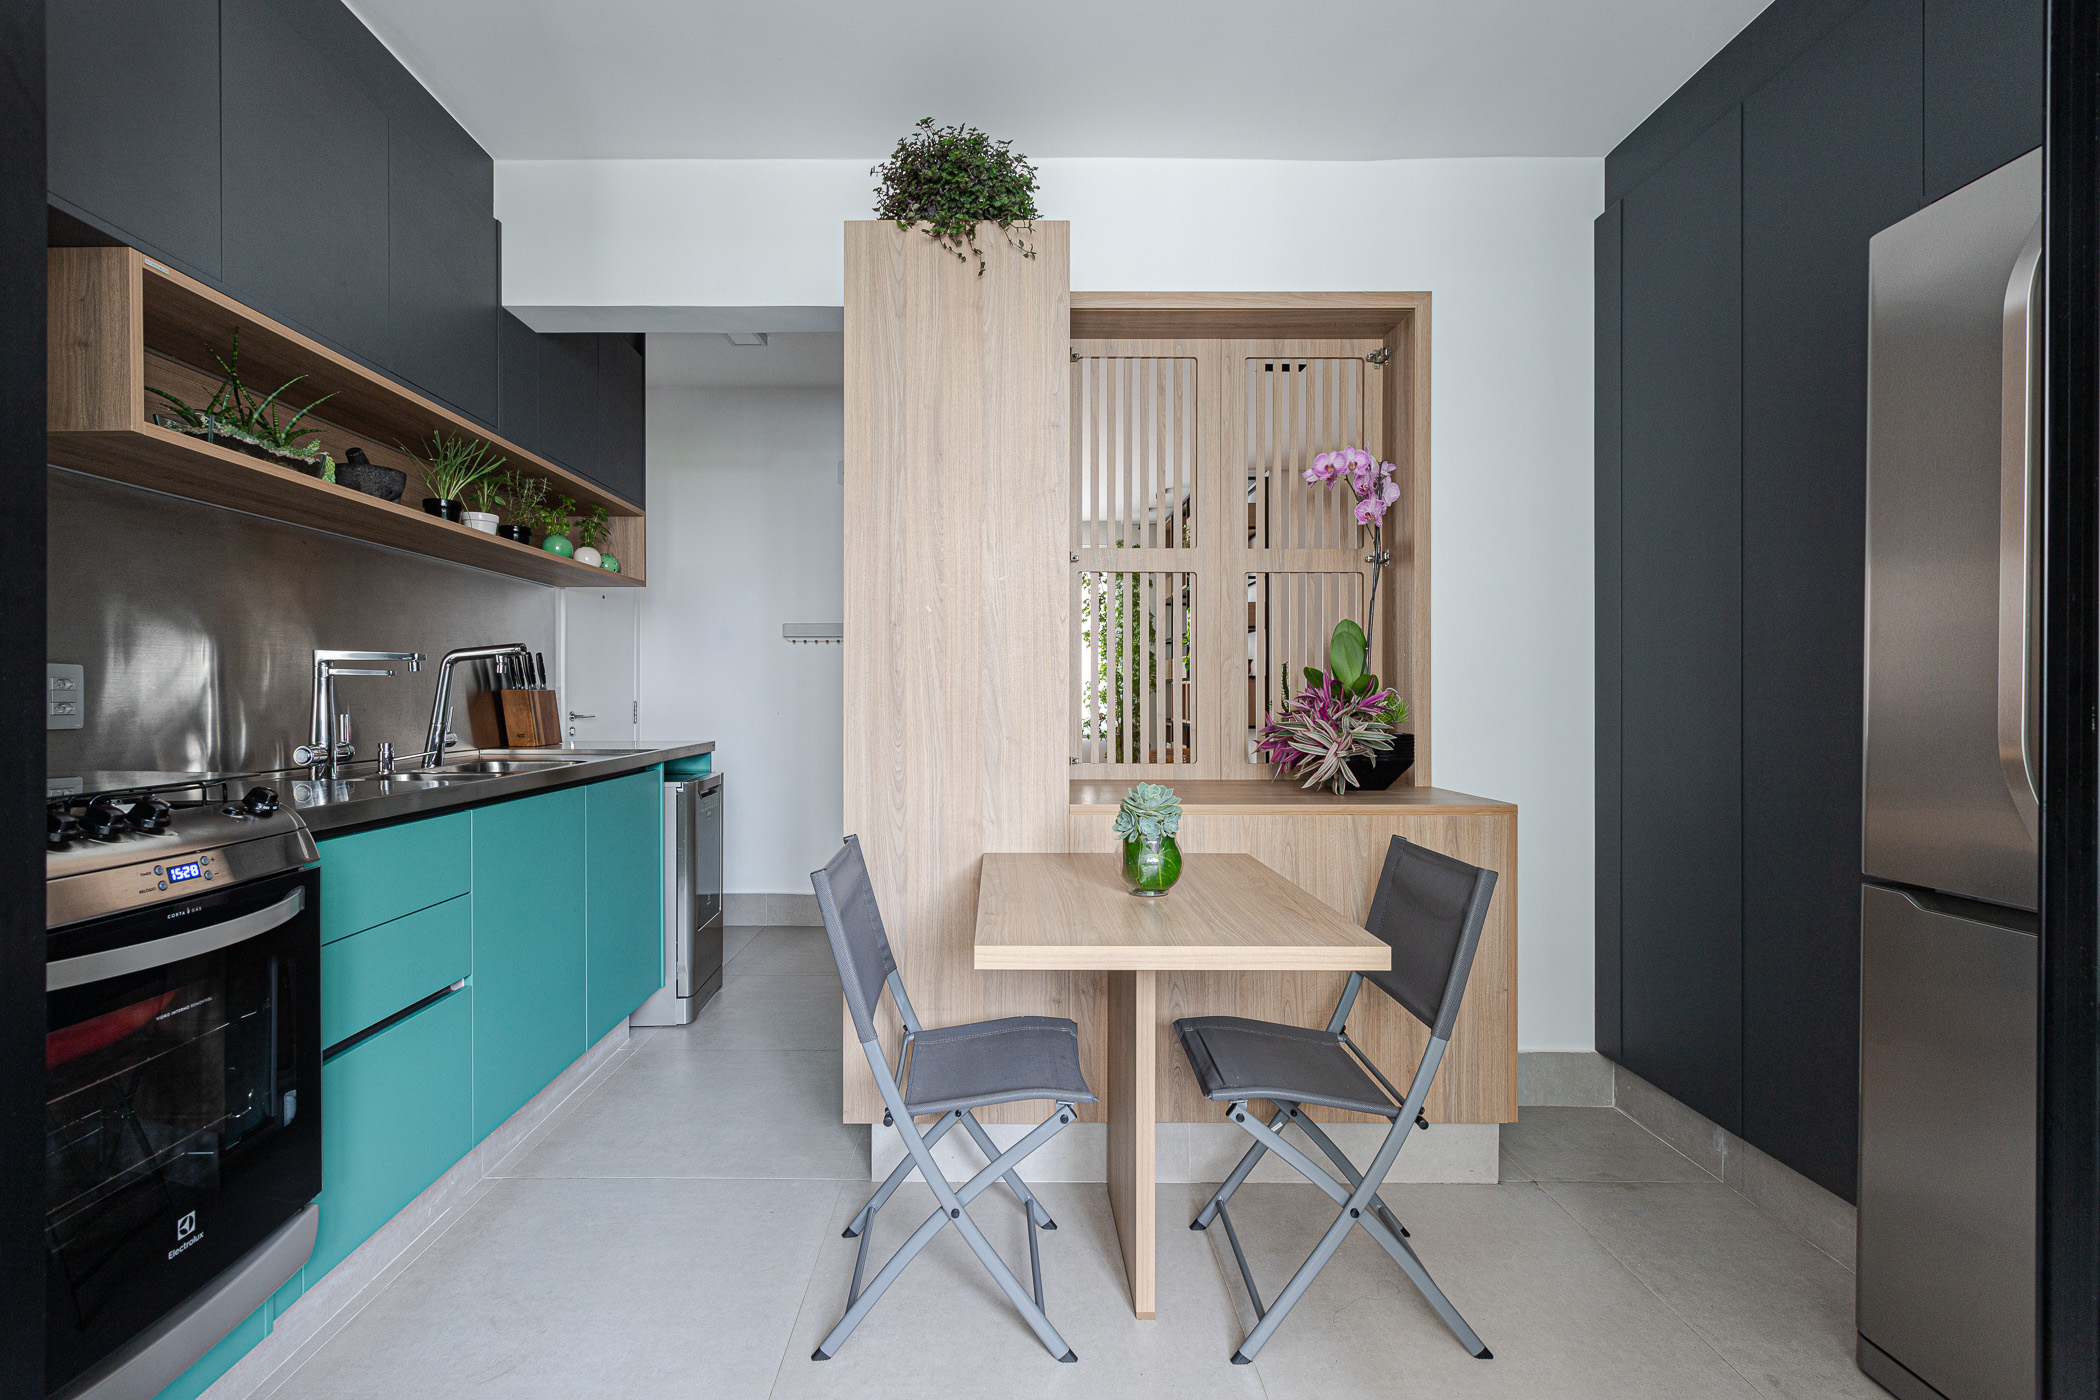 Cozinha inox marcenaria verde apartamento 95 m2 Inovando Arquitetura decoração sala jantar mesa cadeira madeira passa prato ripado cozinha